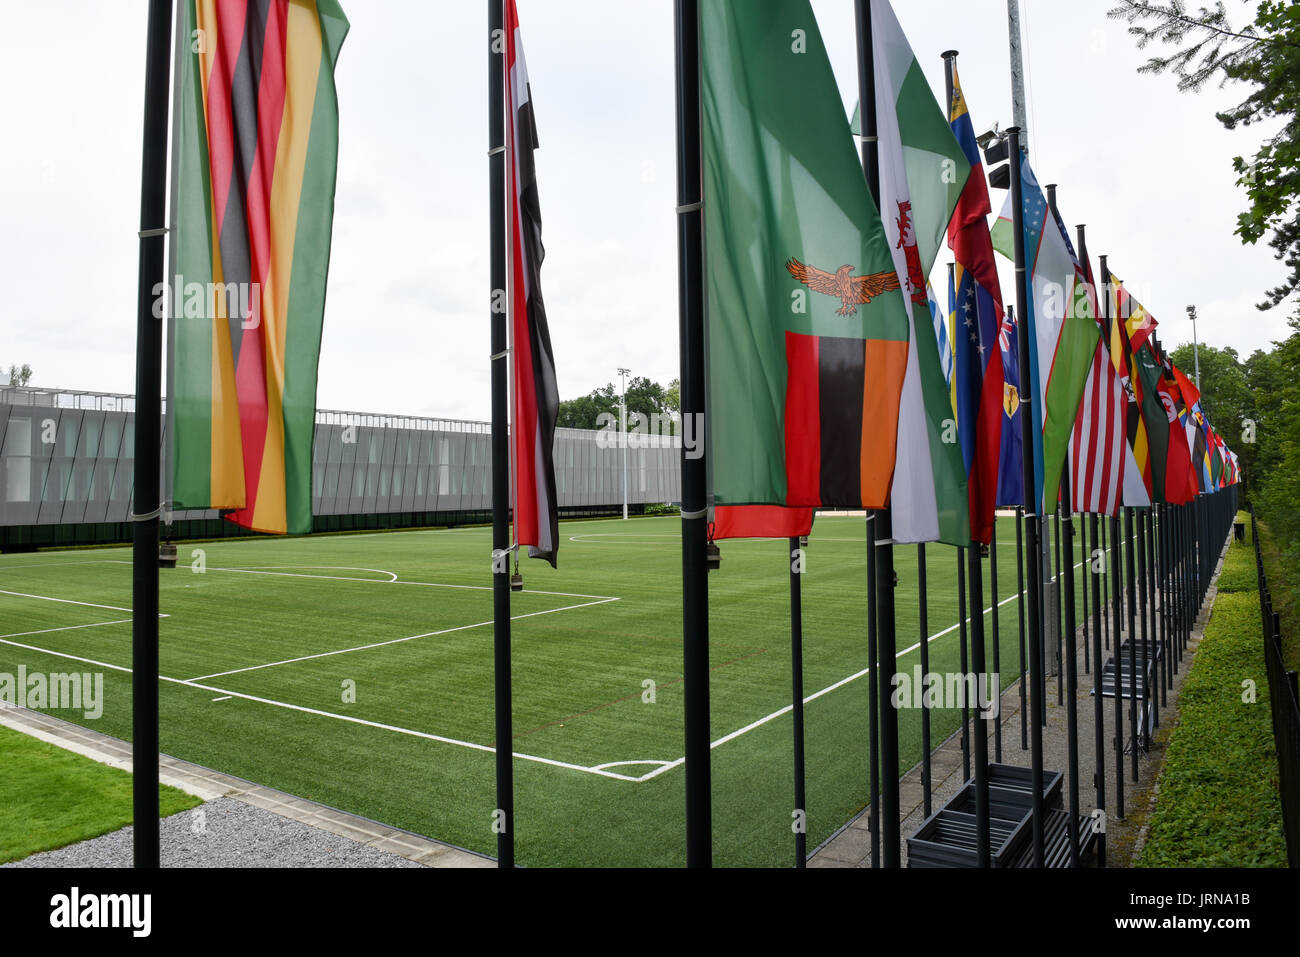 Zuerich, Switzerland - 11 July 2017: Headquarters of FIFA at Zuerich on Switzerland Stock Photo